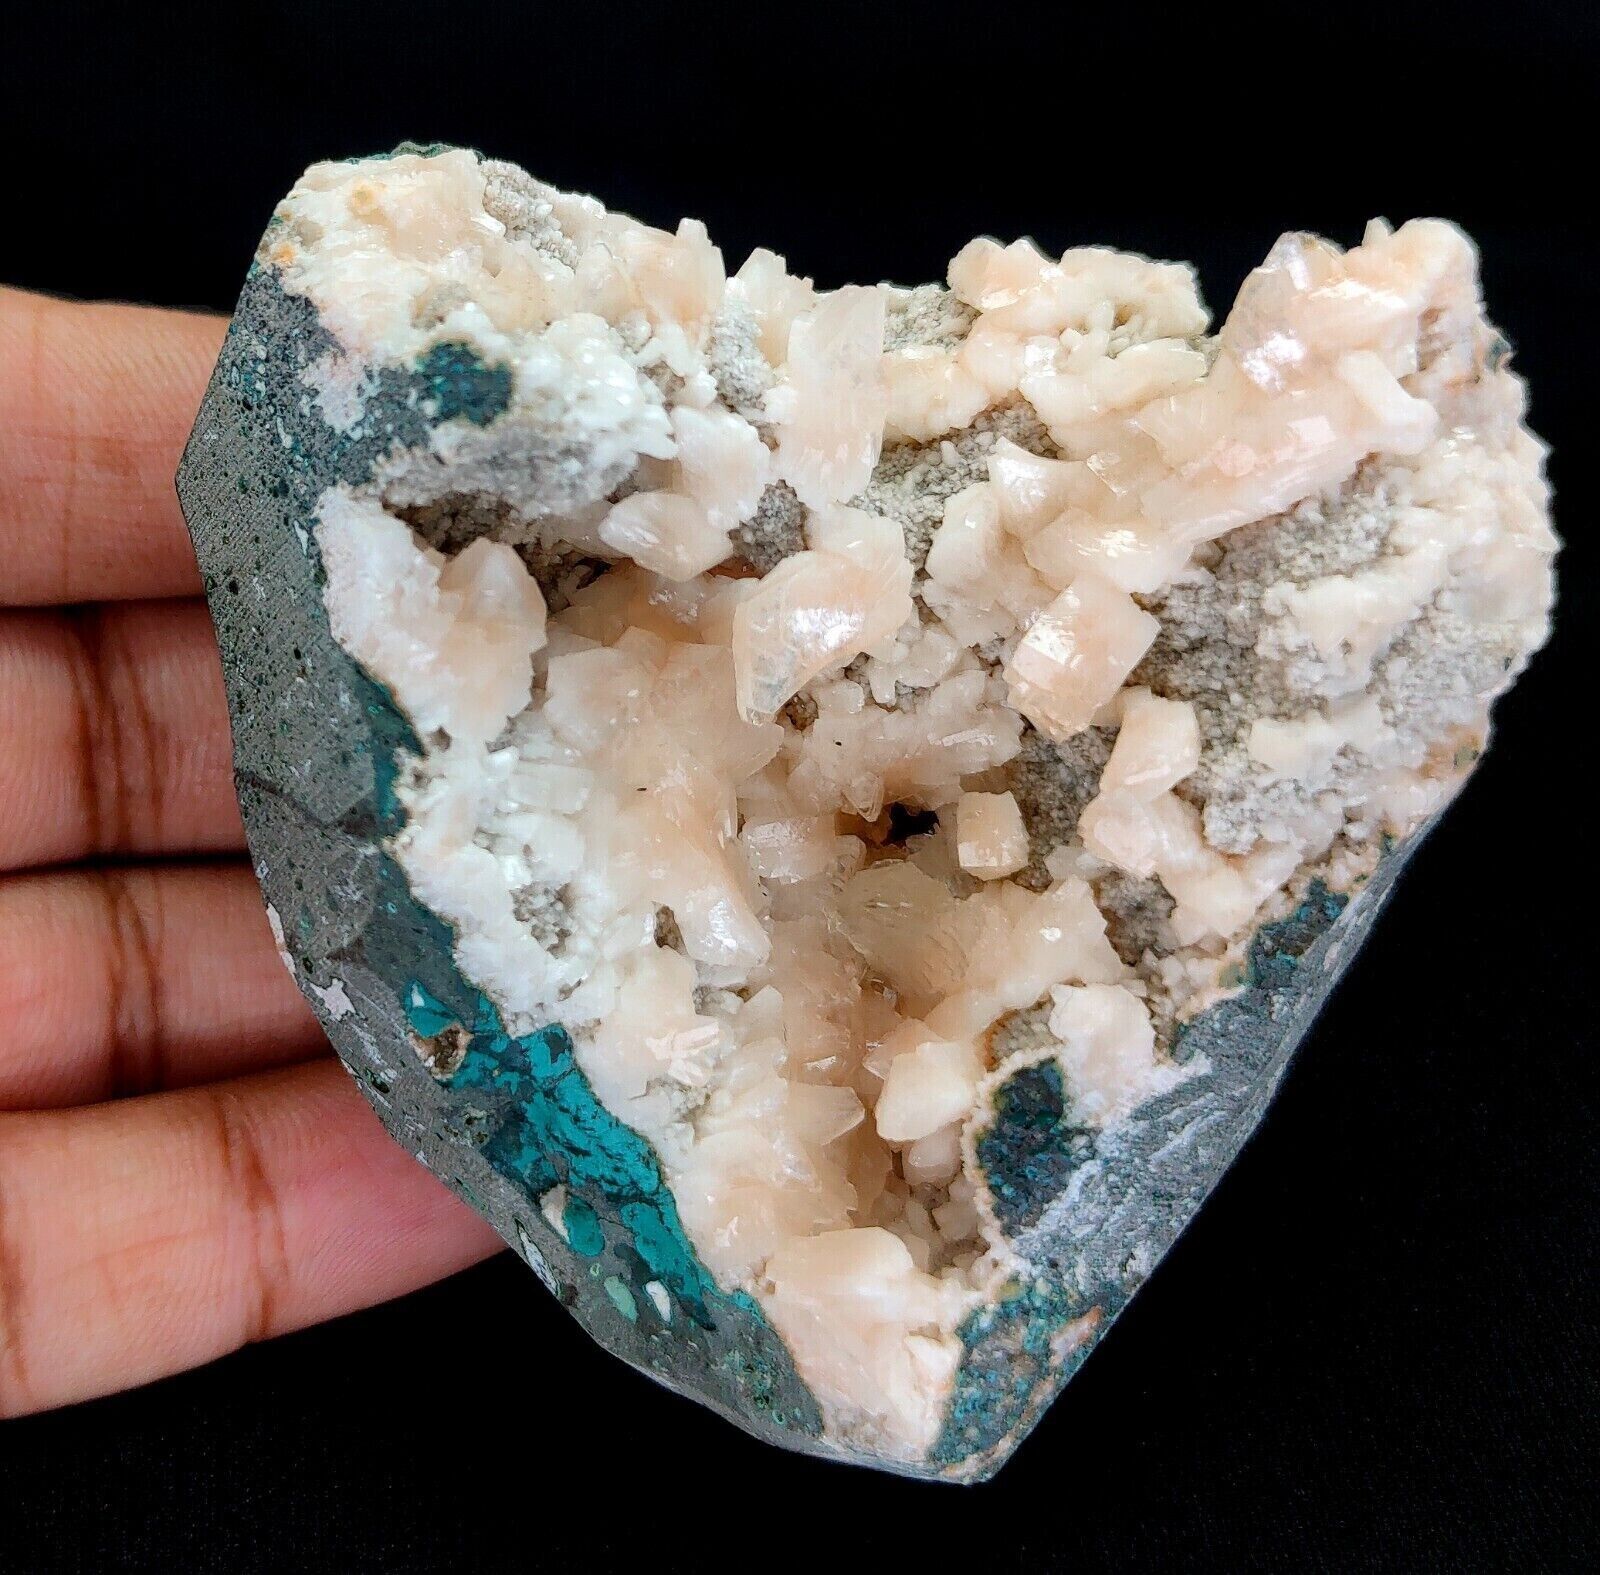 210g Natural Heulandite on Base Matrix Crystal Mineral Specimen - India